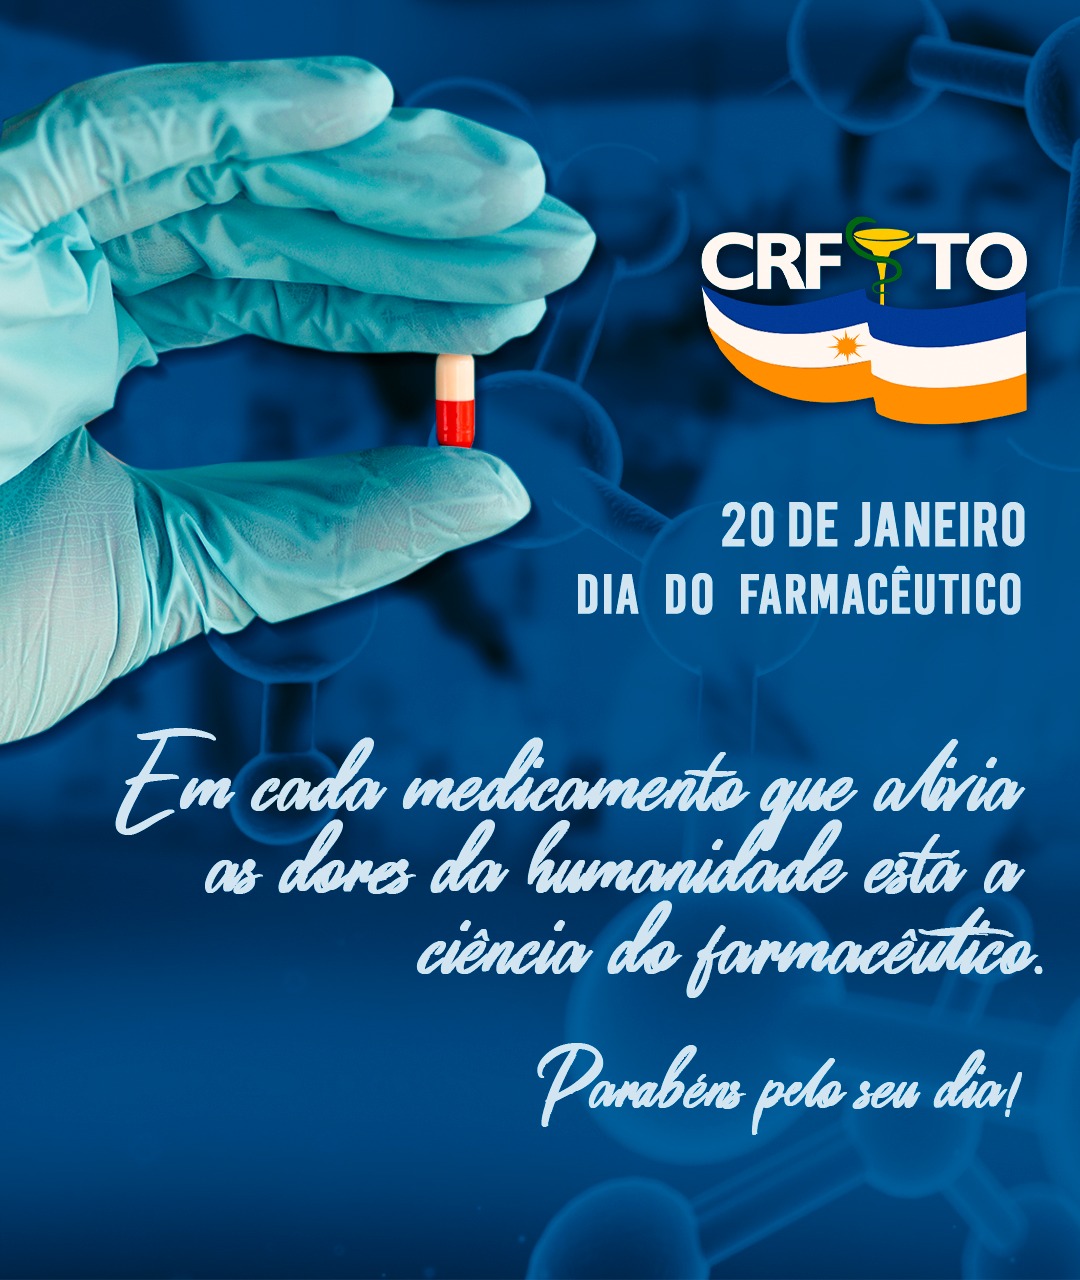 Dia do Farmacêutico: Conselho Regional de Farmácia Parabeniza os Farmacêuticos do Tocantins